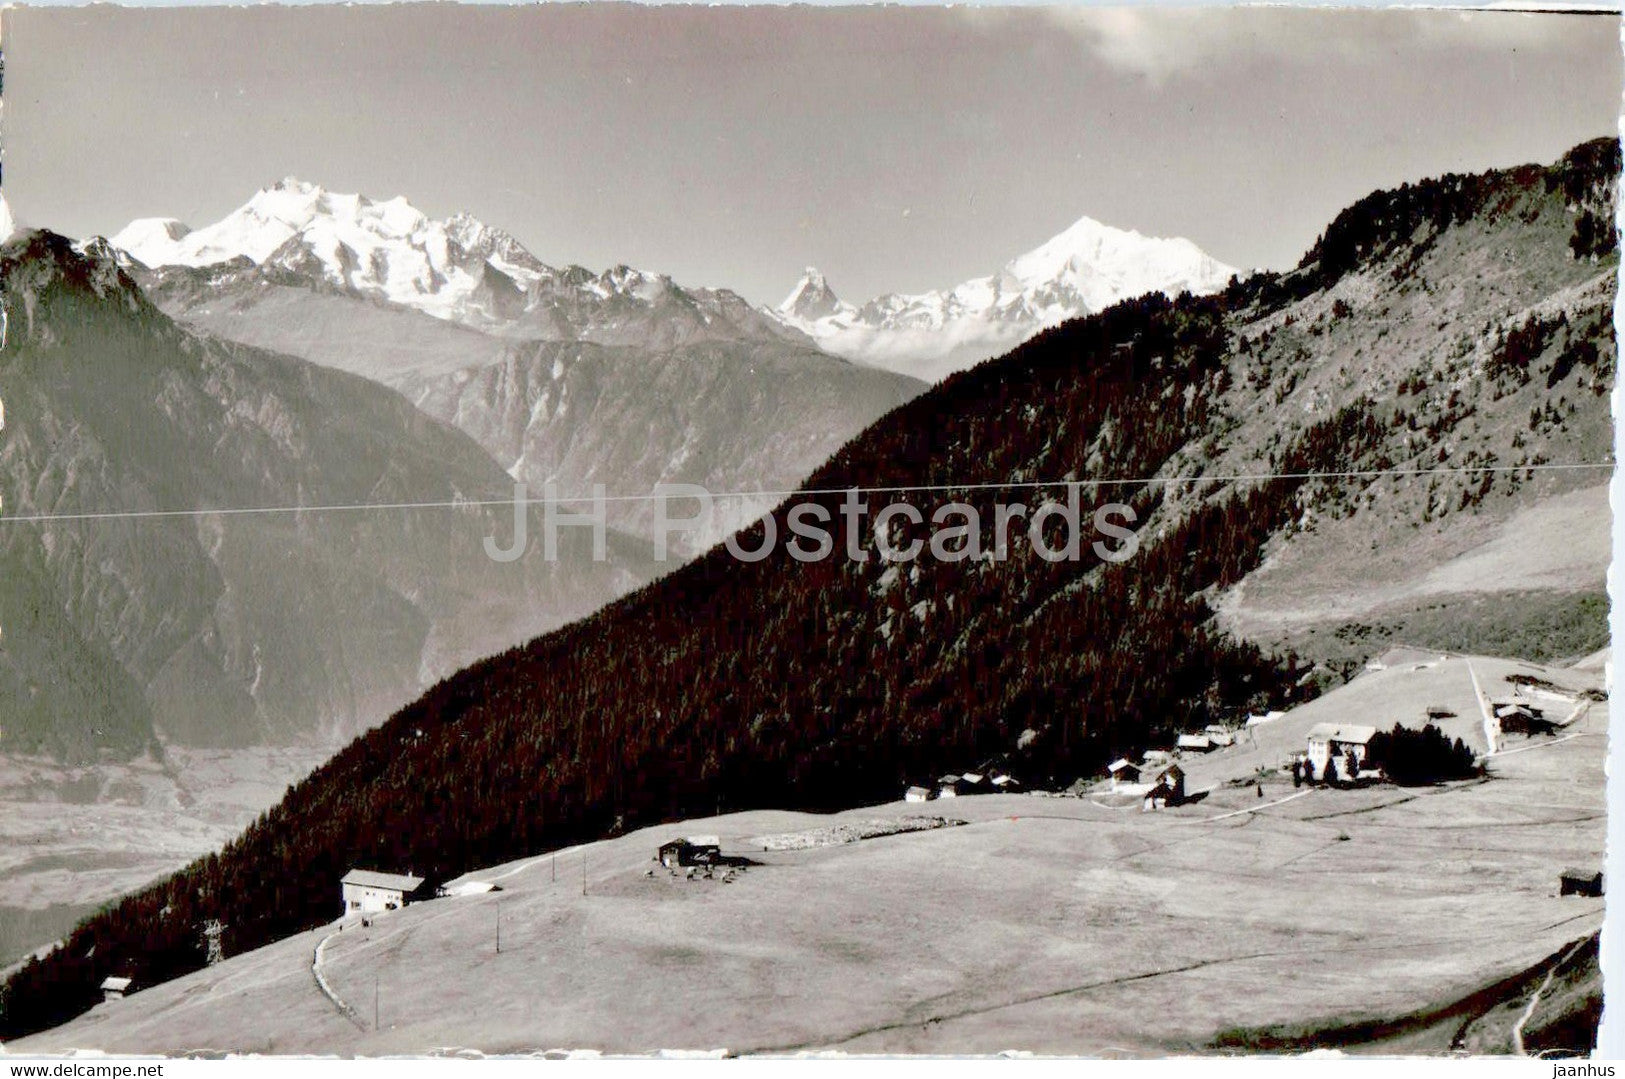 Riederalp - Mischabel - Matterhorn - Weisshorn - 19544 - old postcard - Switzerland - unused - JH Postcards